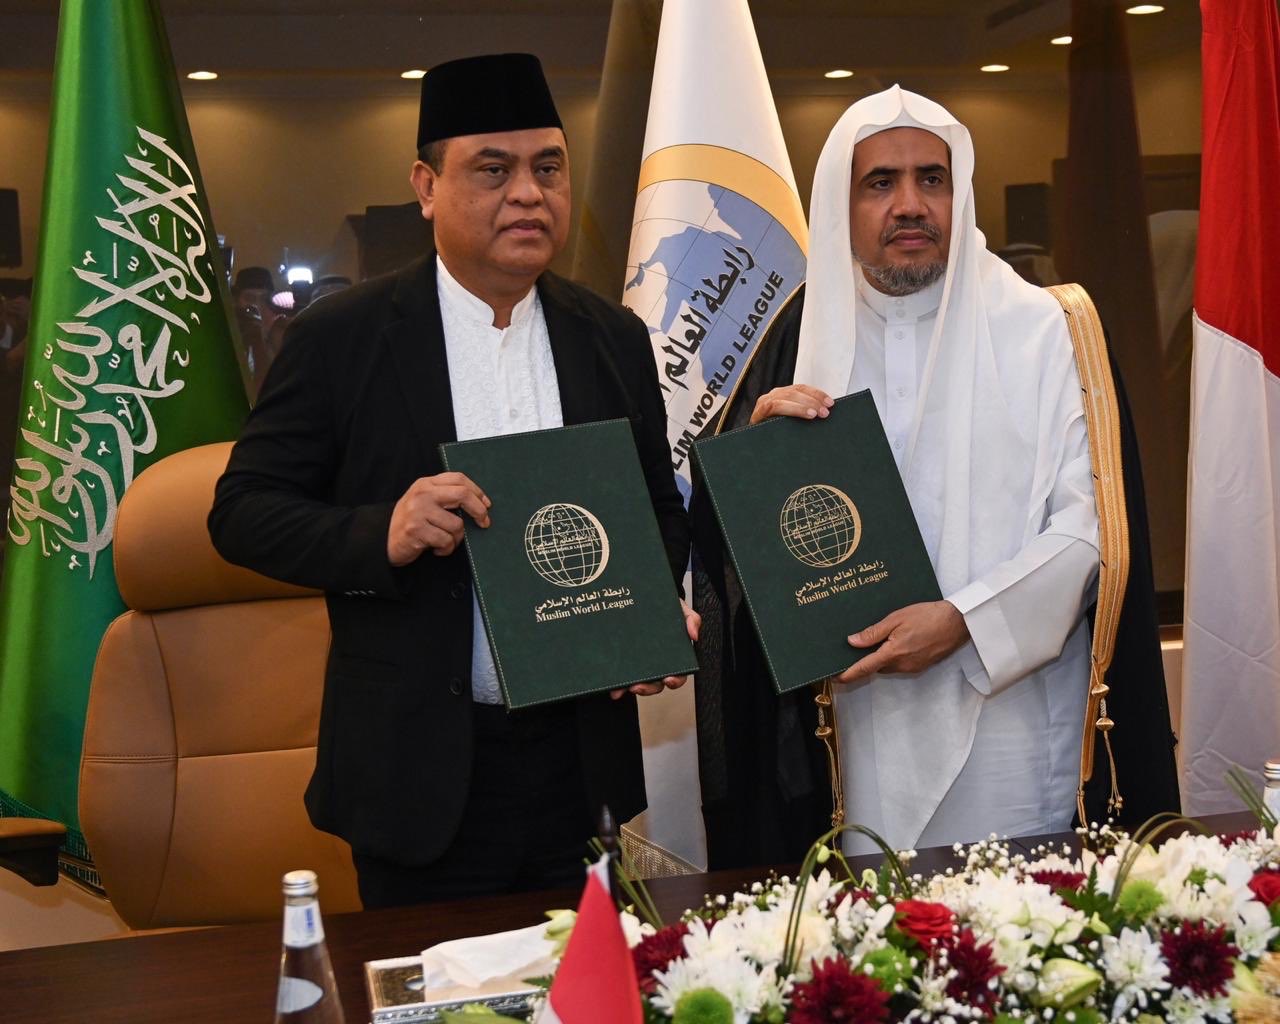 Le Gouvernement indonésien demande à la Ligue Islamique Mondiale de créer « un musée sur la vie du Prophète et la civilisation islamique ». L’accord a été signé à Jeddah entre le D.Mohammad Alissa et le Ministre indonésien des affaires civiles.